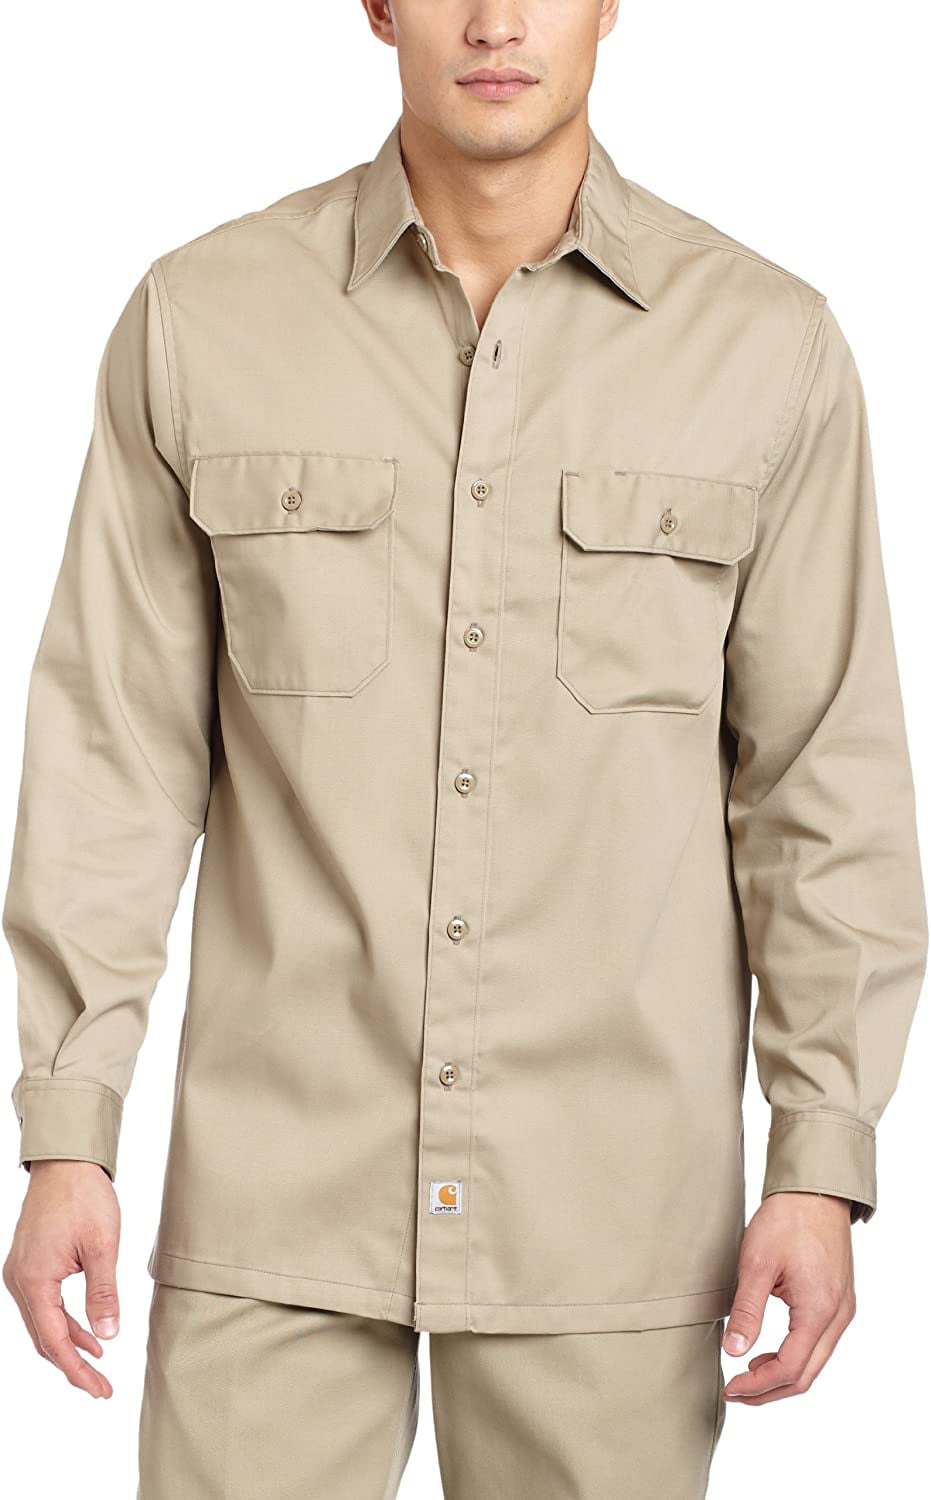 Carhartt Men's Big & Tall Twill Long Sleeve Relaxed Fit Work Shirt ...